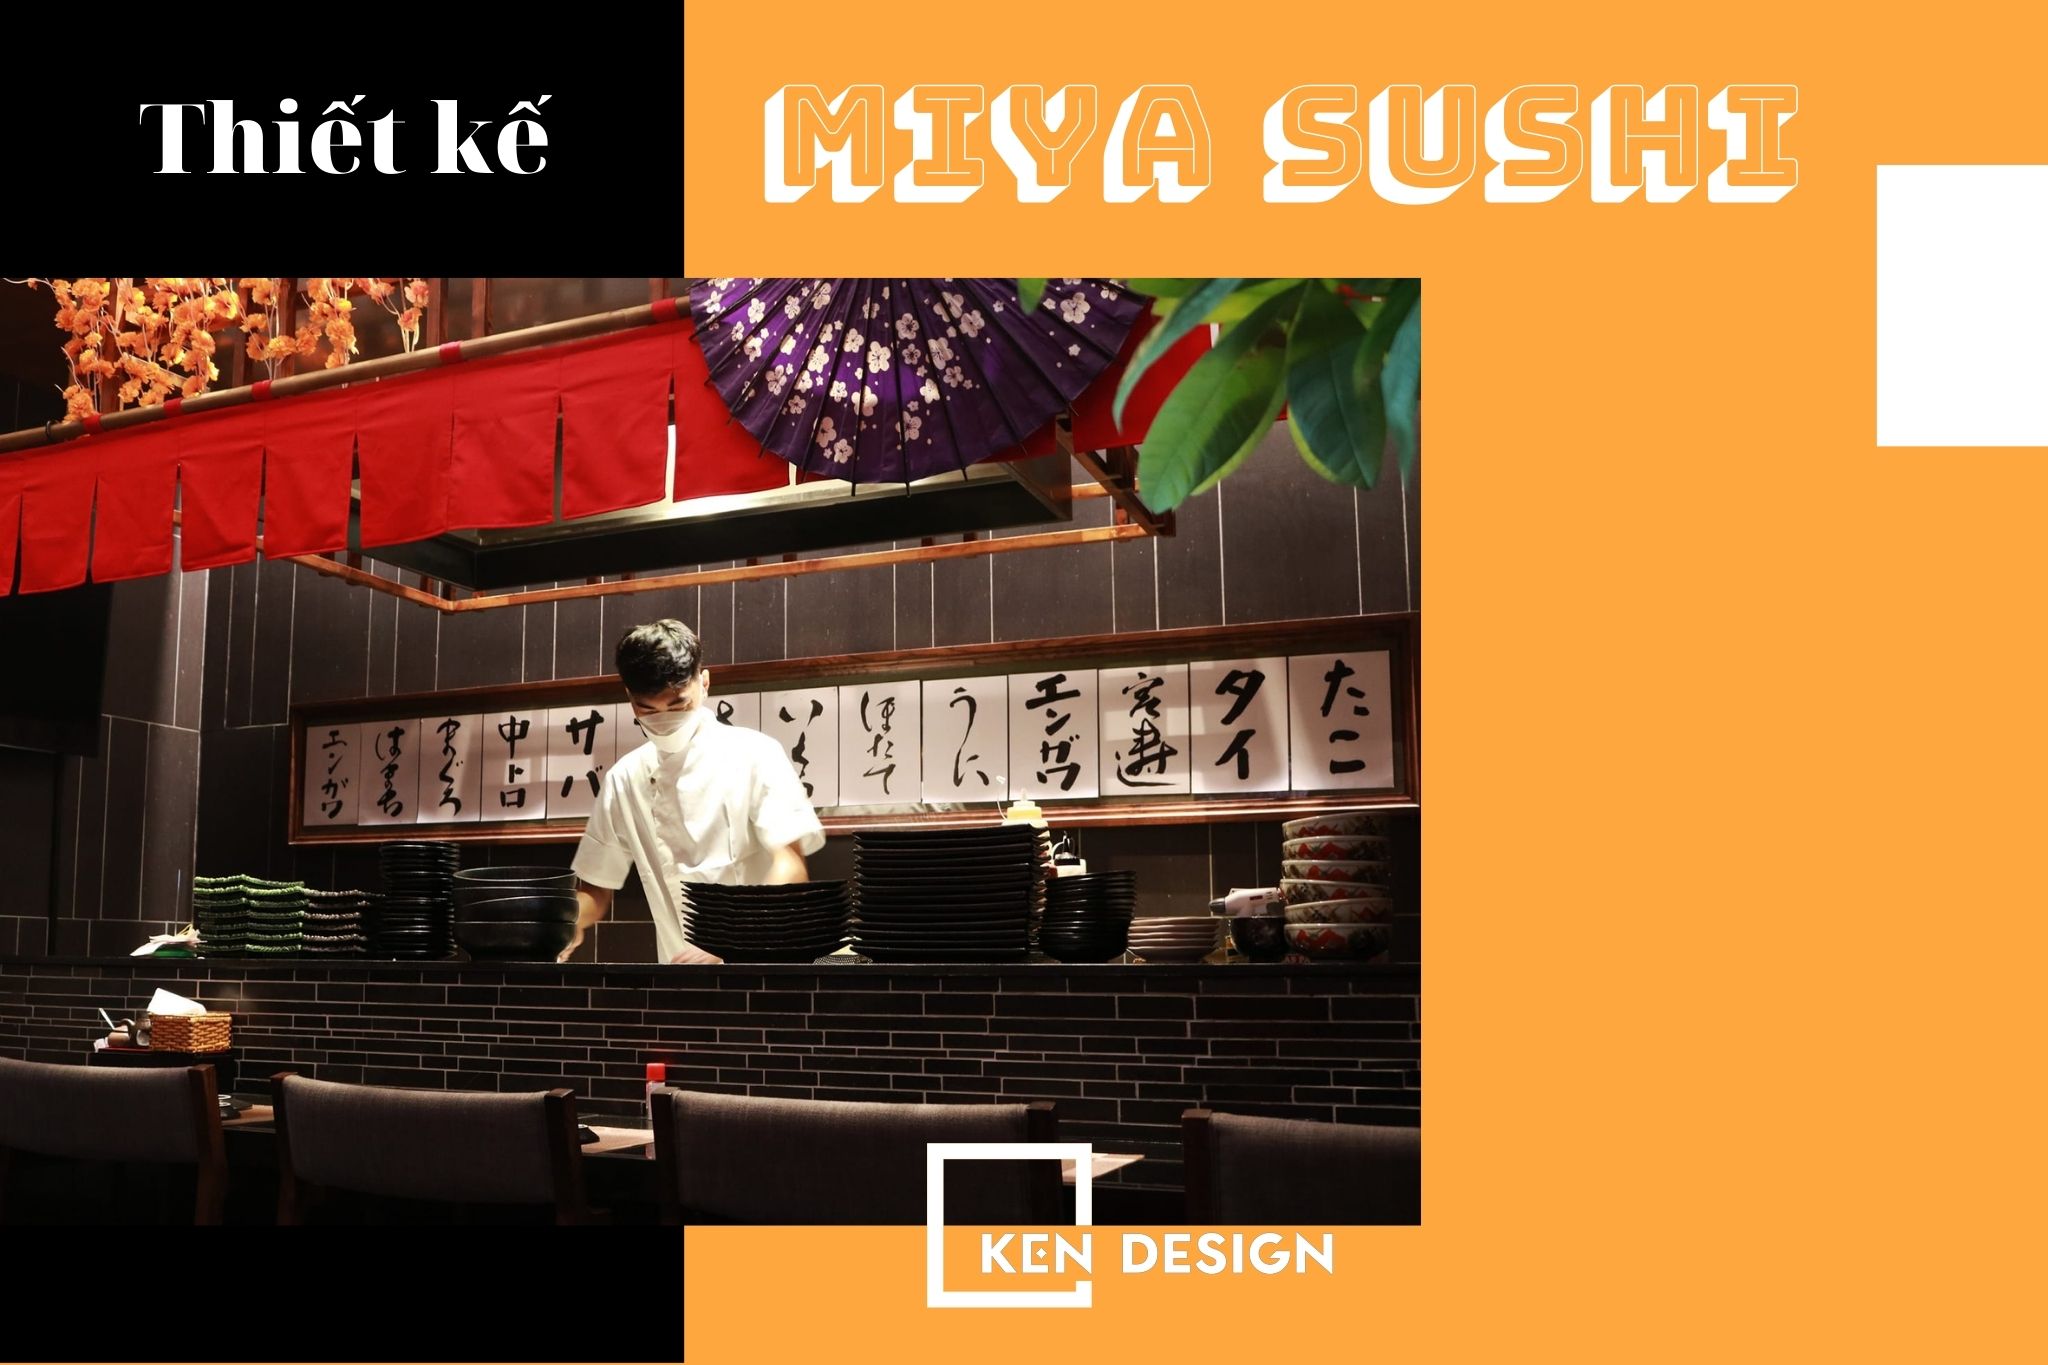 thiết kế nhà hàng Miya Sushi